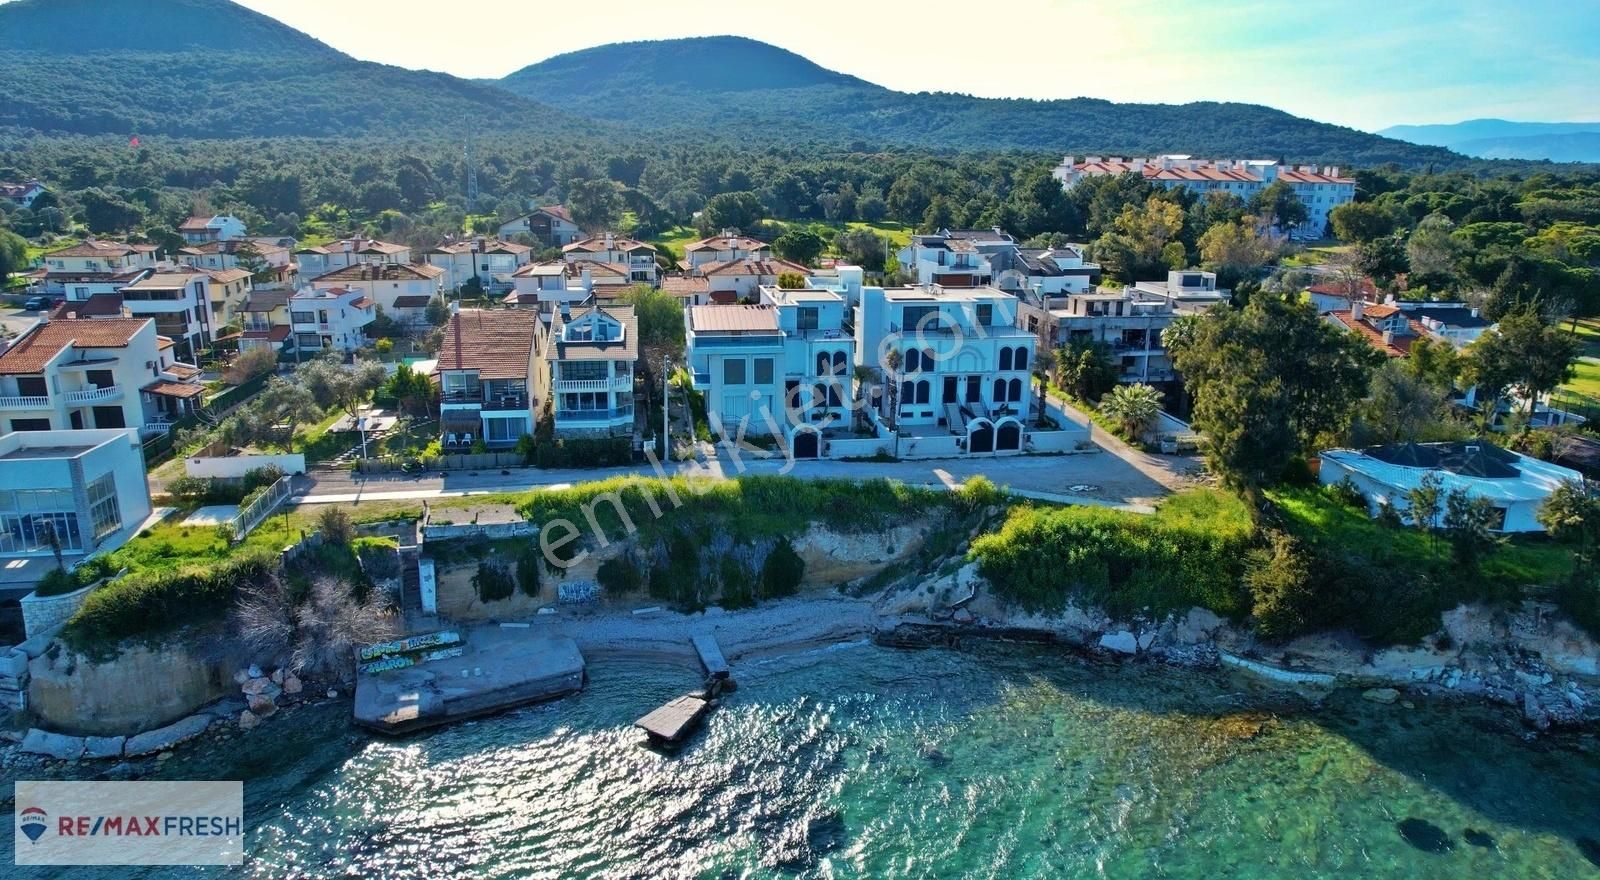 Urla Güvendik Satılık Villa Urla Çeşmealtı'nda Denize Sıfır 6+1 Satılık Lüks Villa